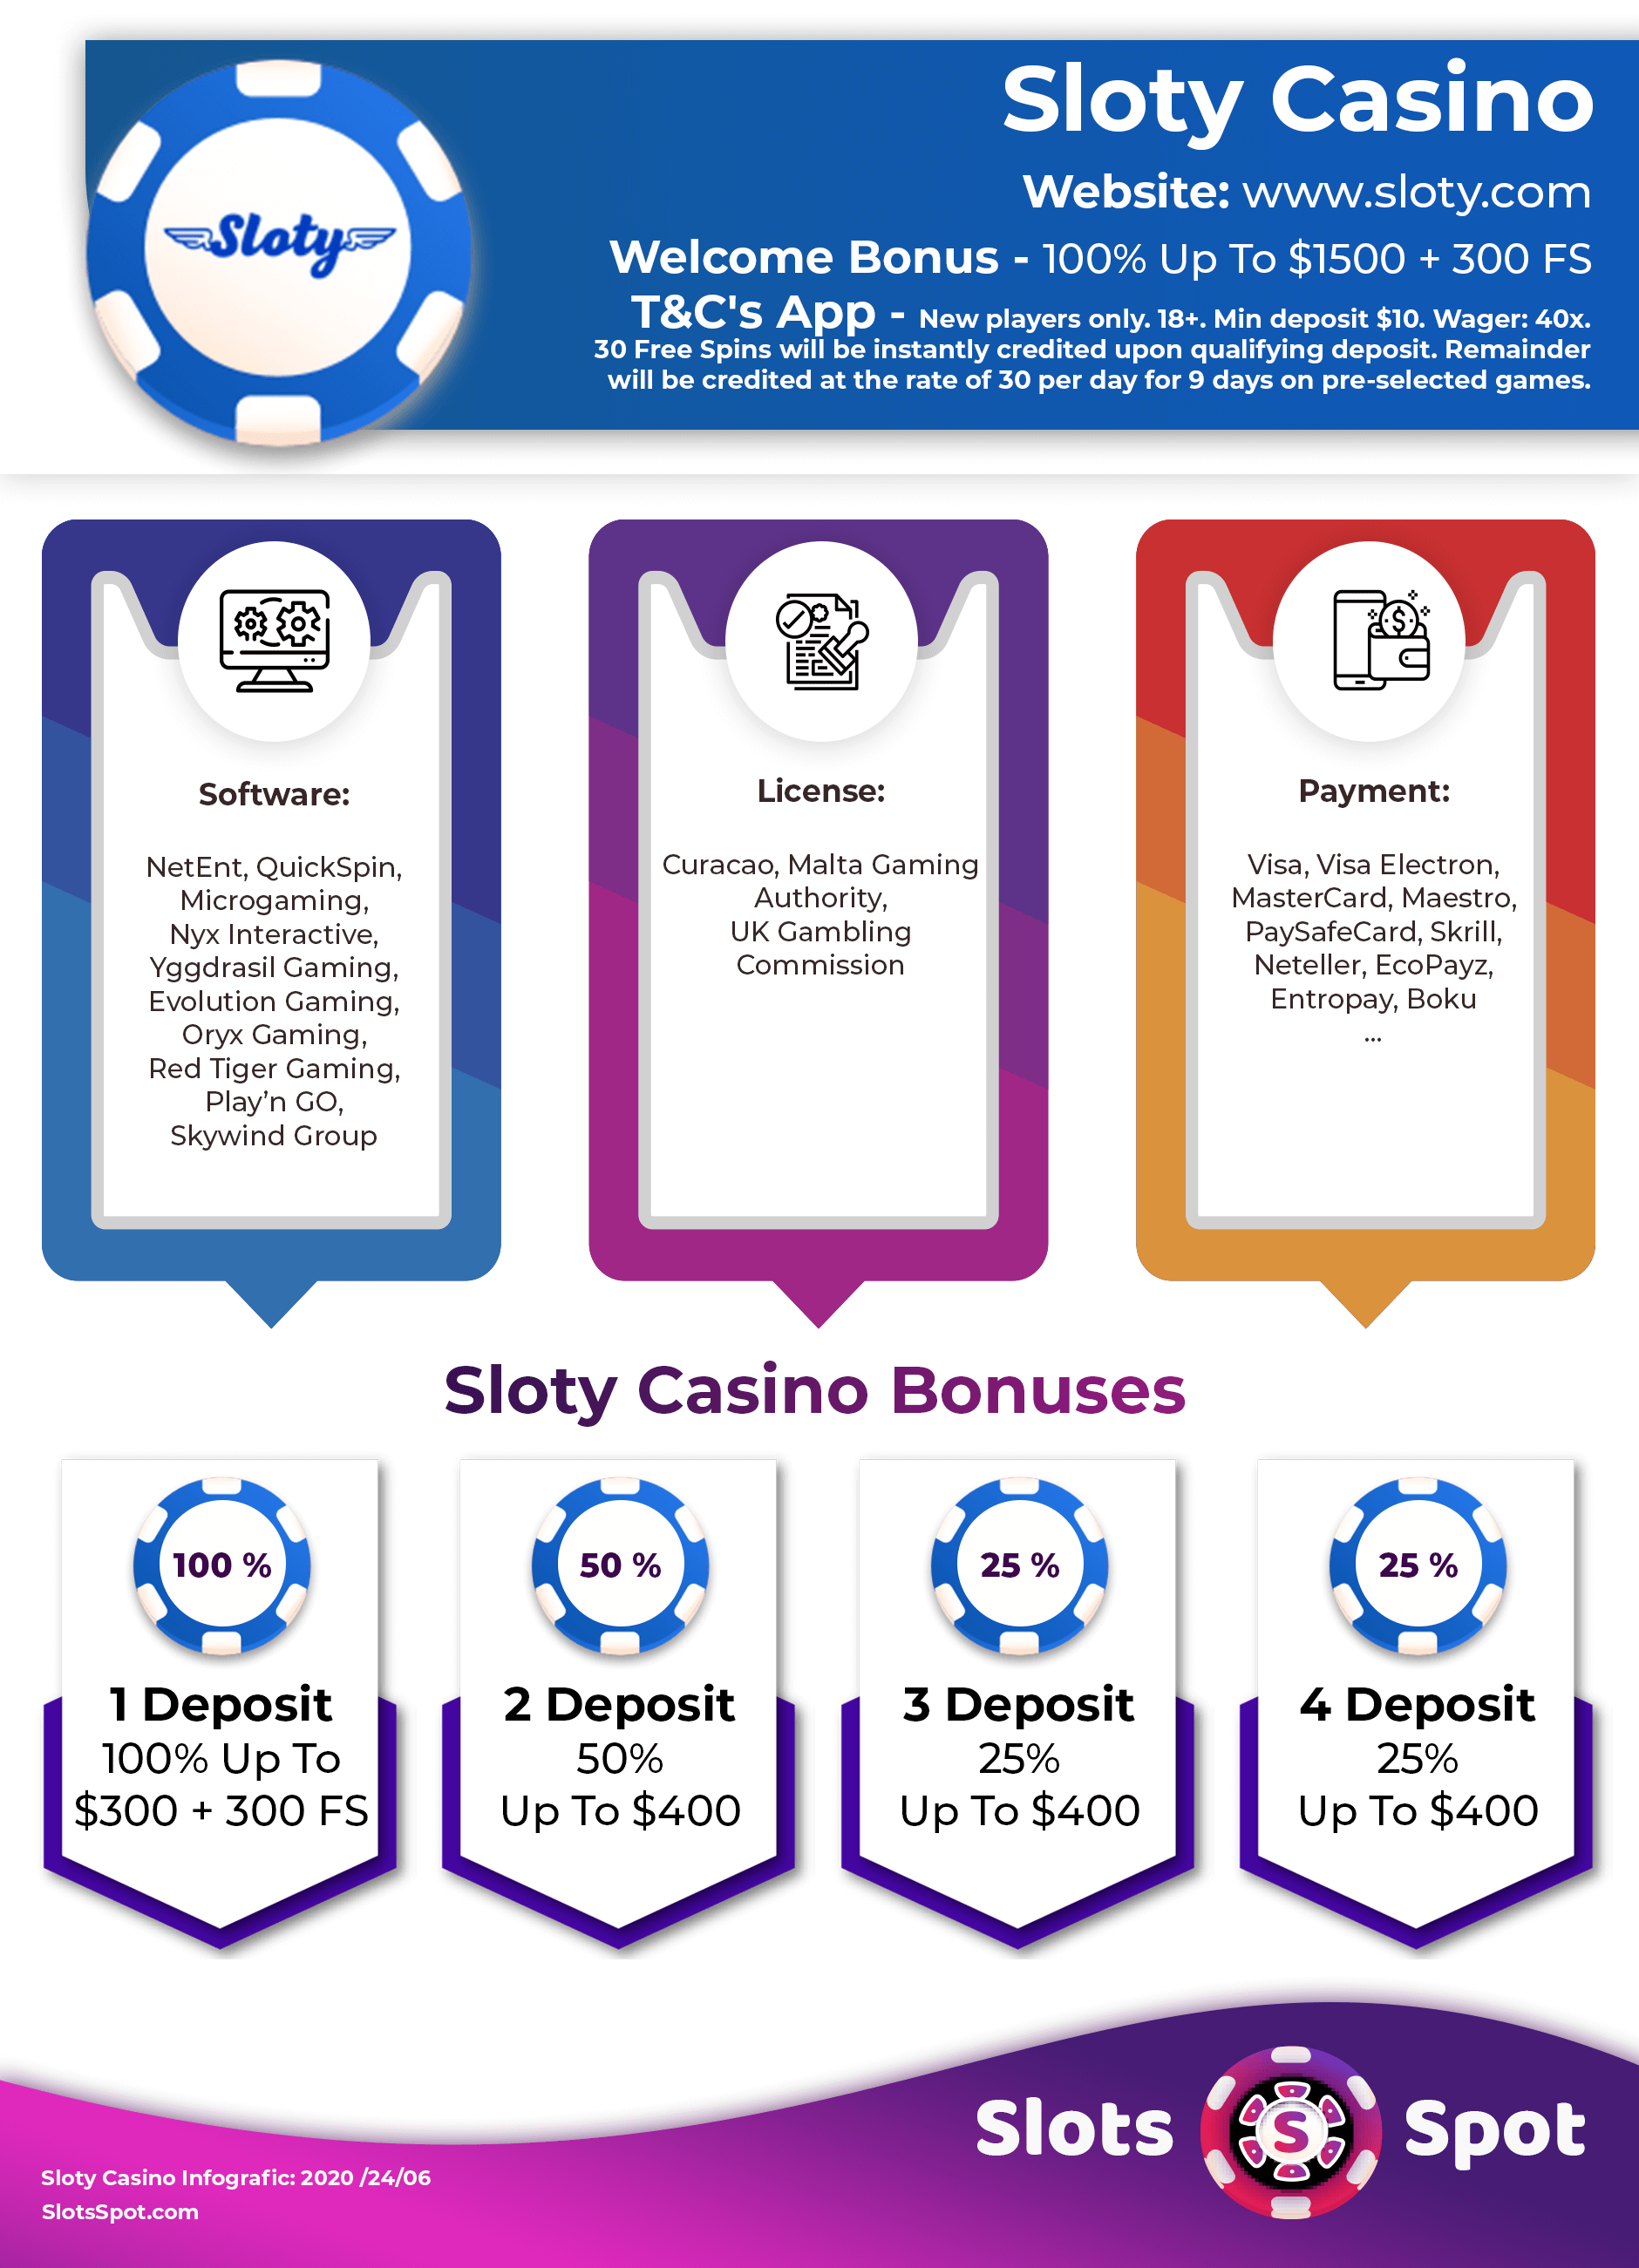 casino online em portugal